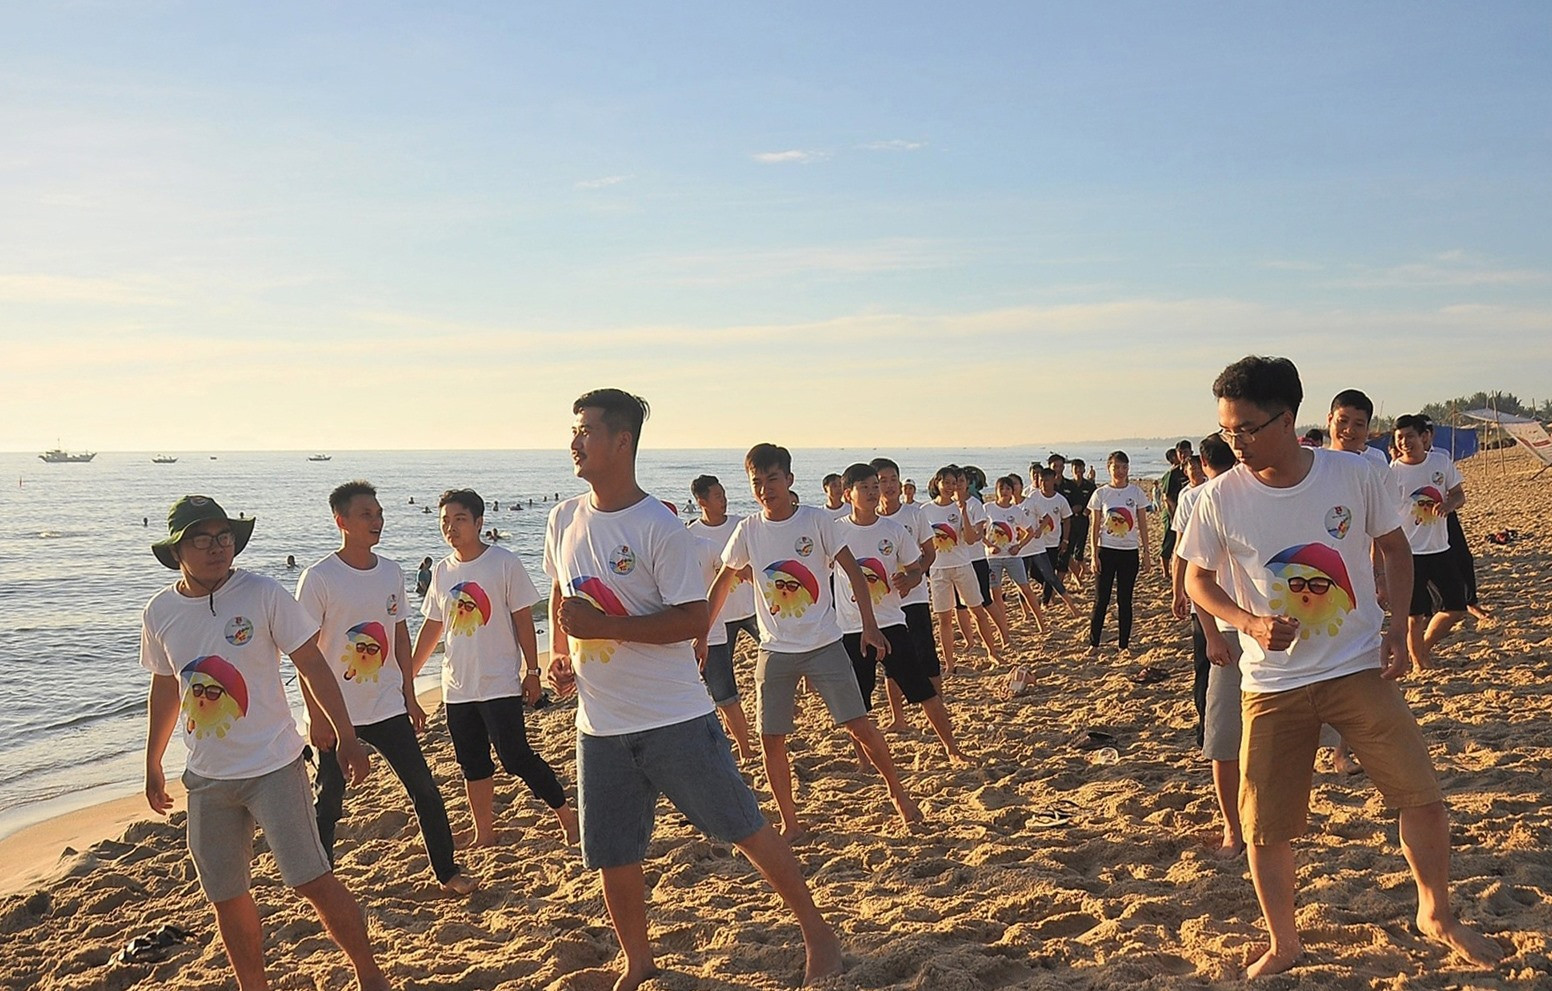 Cán bộ đoàn hào hứng với các bài thể dục khởi động ngày mới tại bãi biển từ rạng sáng. Ảnh: VINH ANH